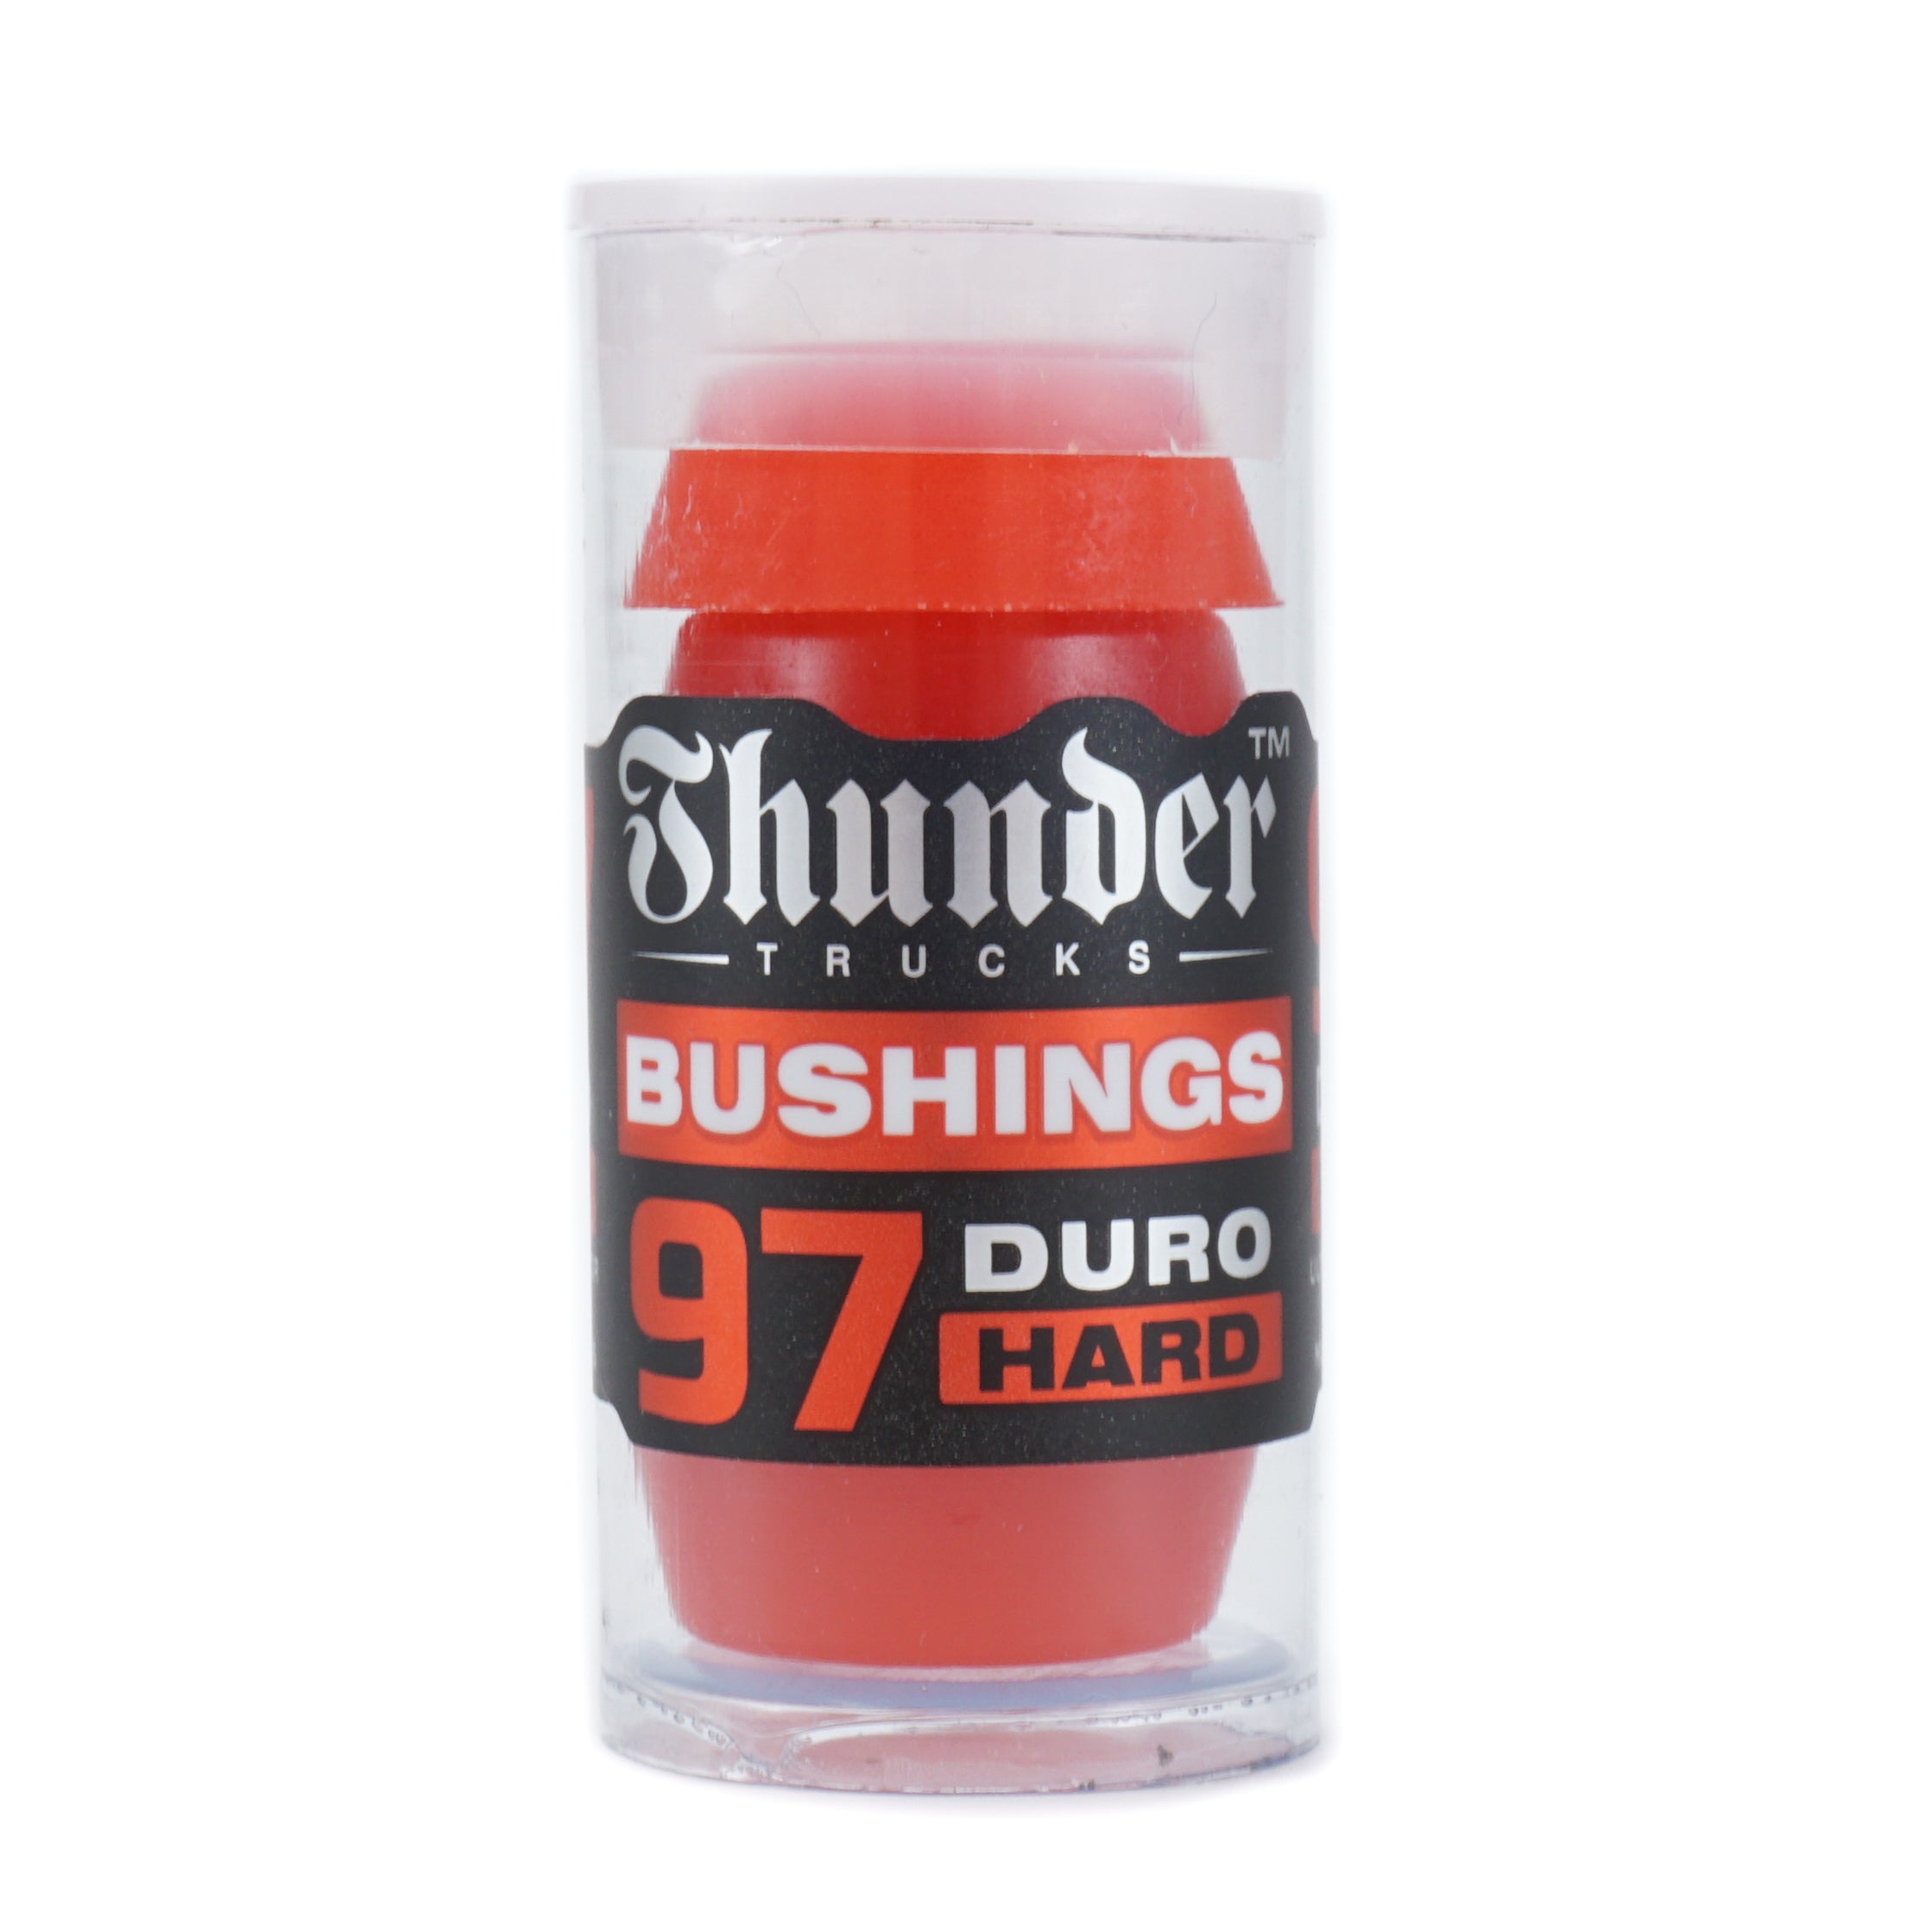 Premium Bushings 97du - Red